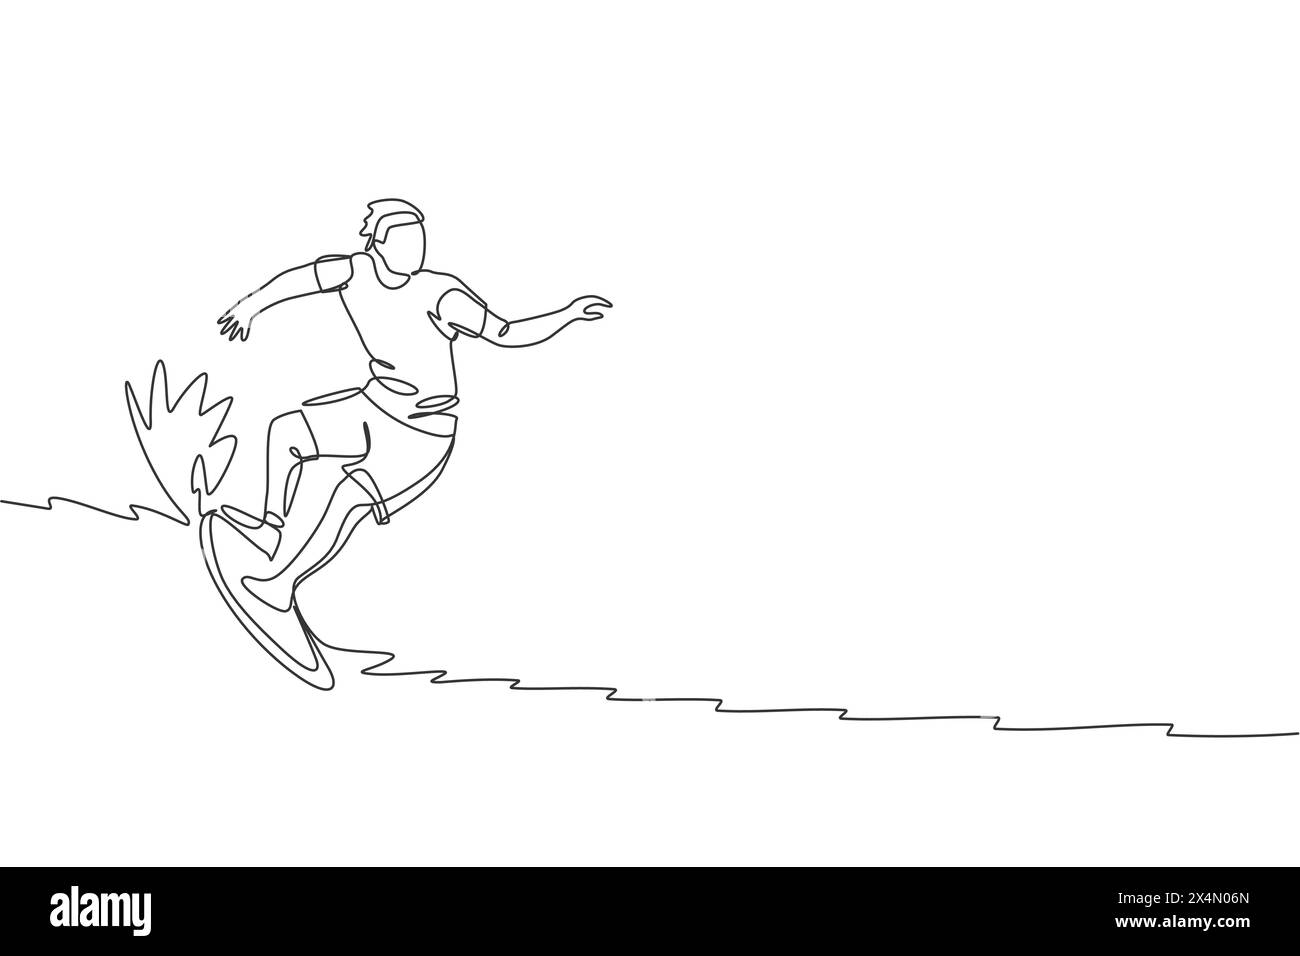 Un dessin simple ligne de jeune homme surfer sportif chevauchant sur de grandes vagues dans le graphique d'illustration vectorielle de surf de plage paradisiaque. Sports nautiques extrêmes conc Illustration de Vecteur